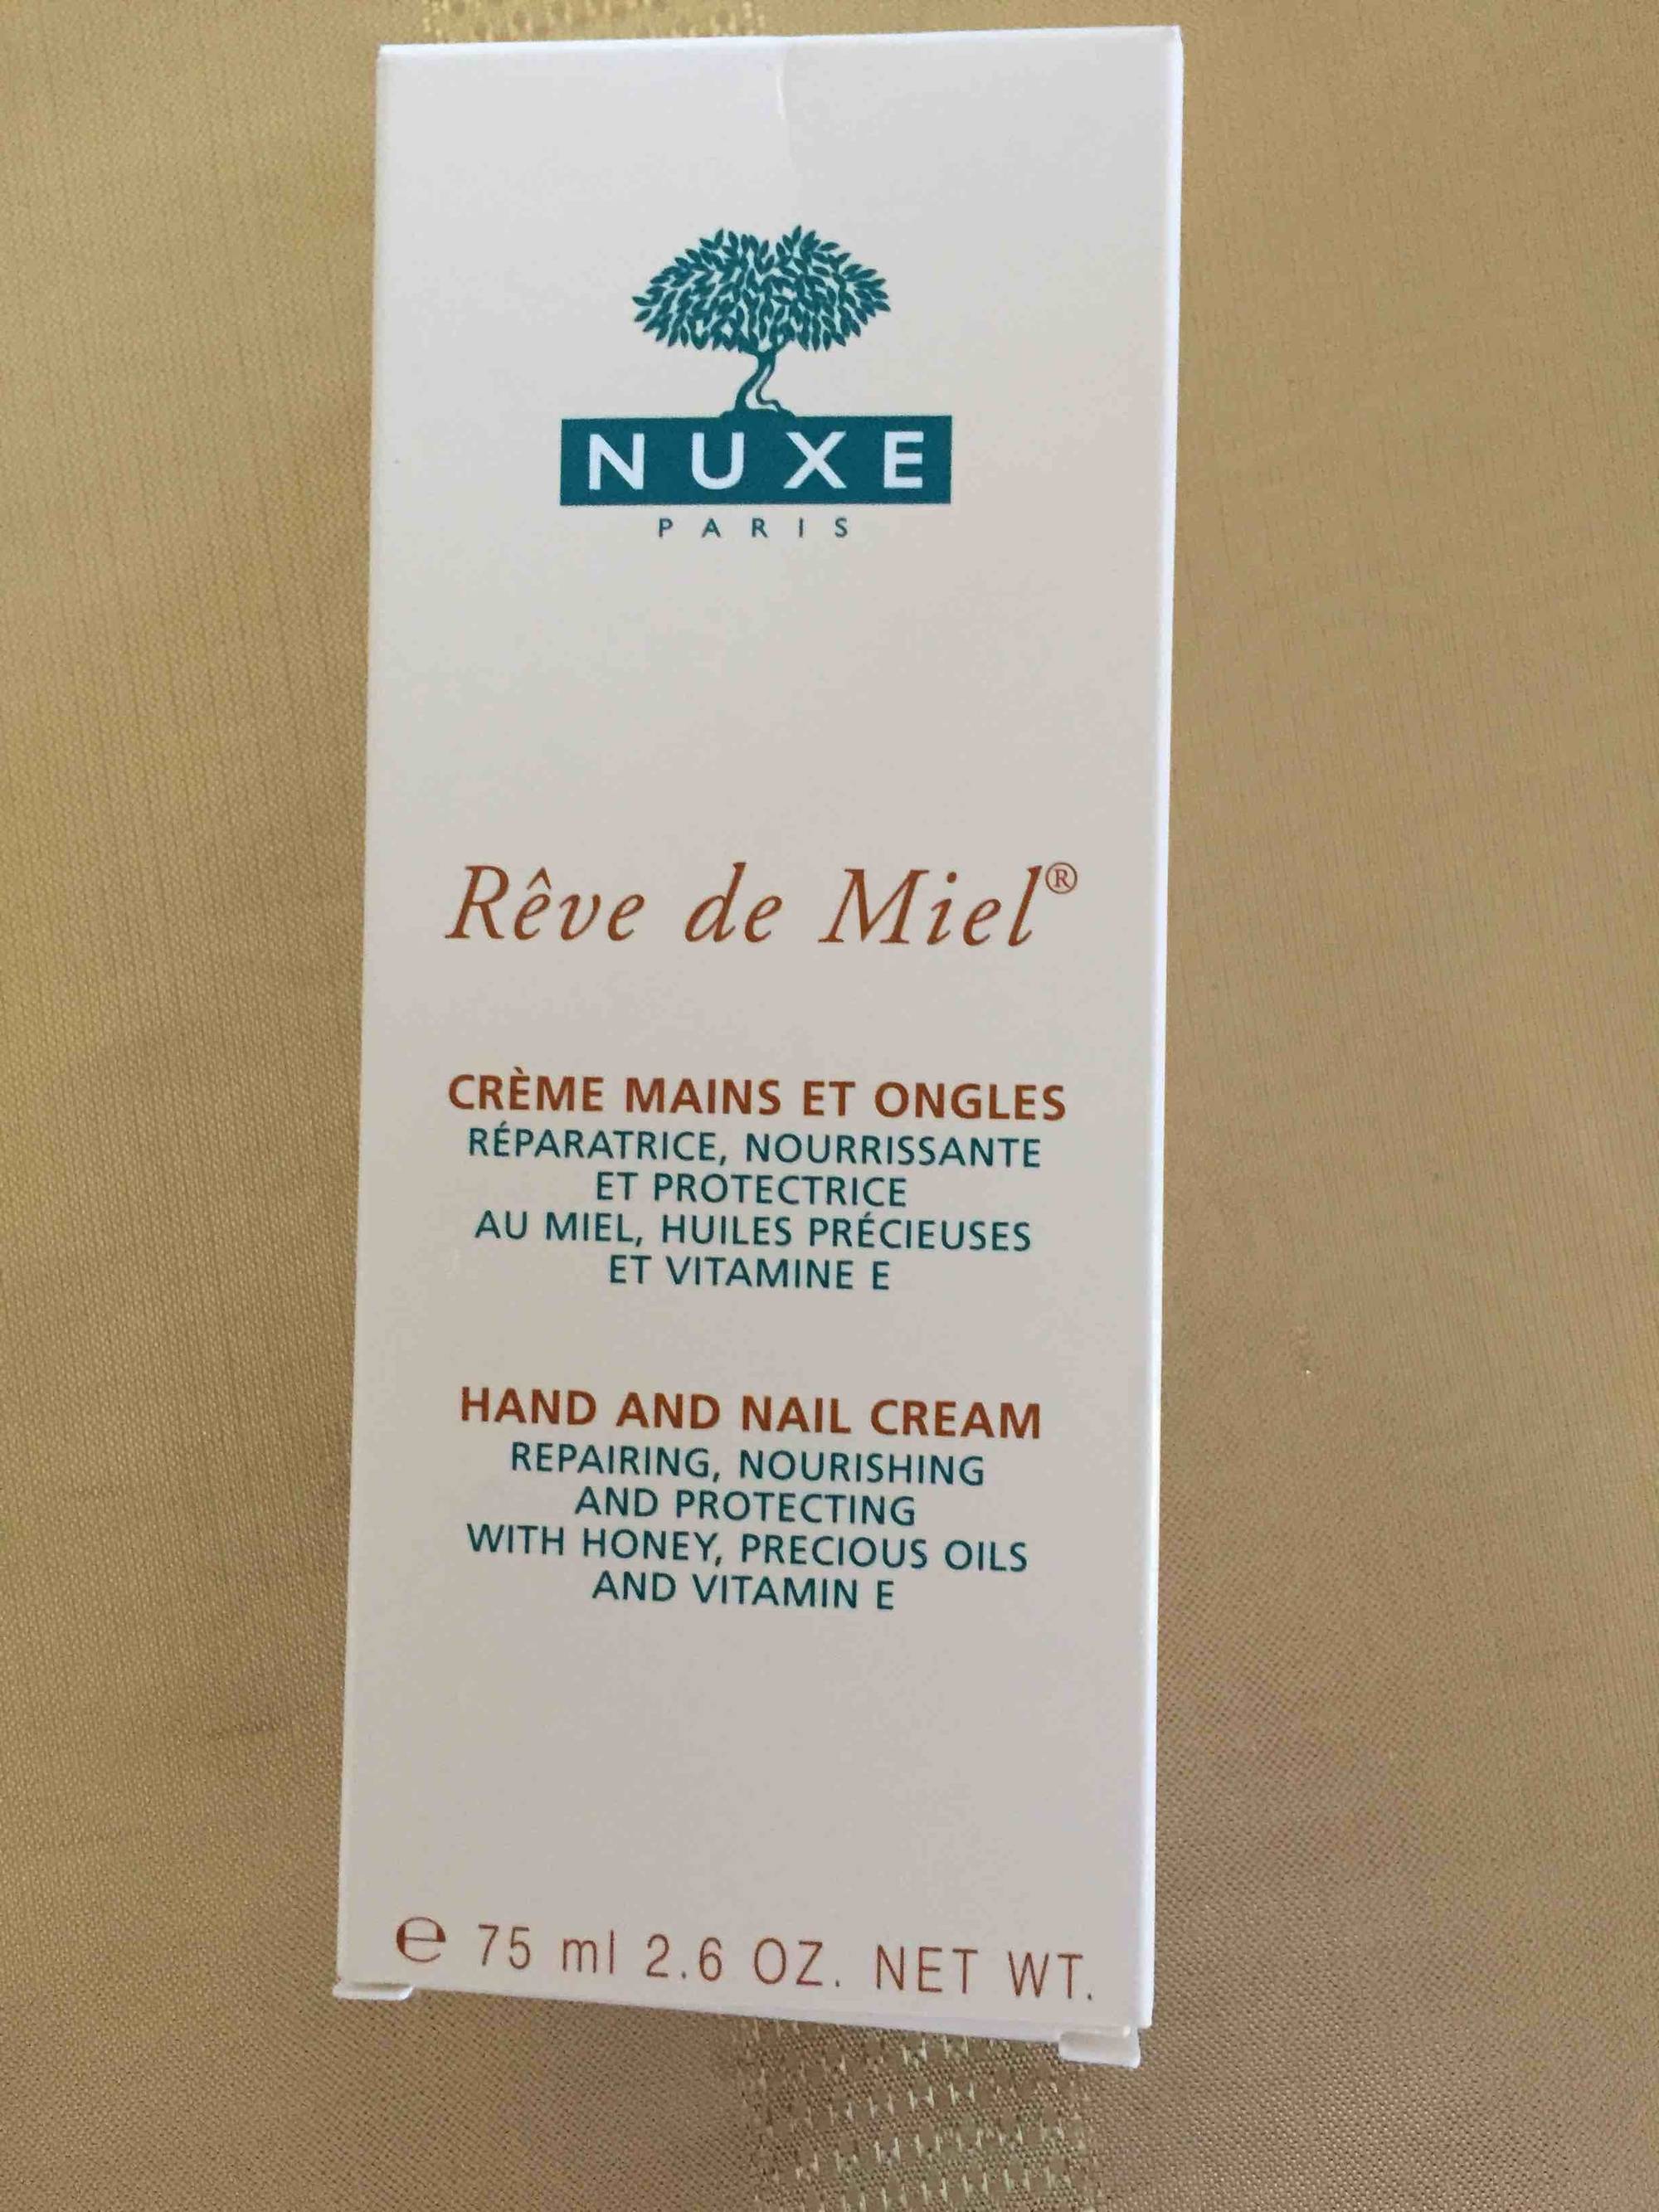 NUXE - Rêve de miel - Crème mains et ongles